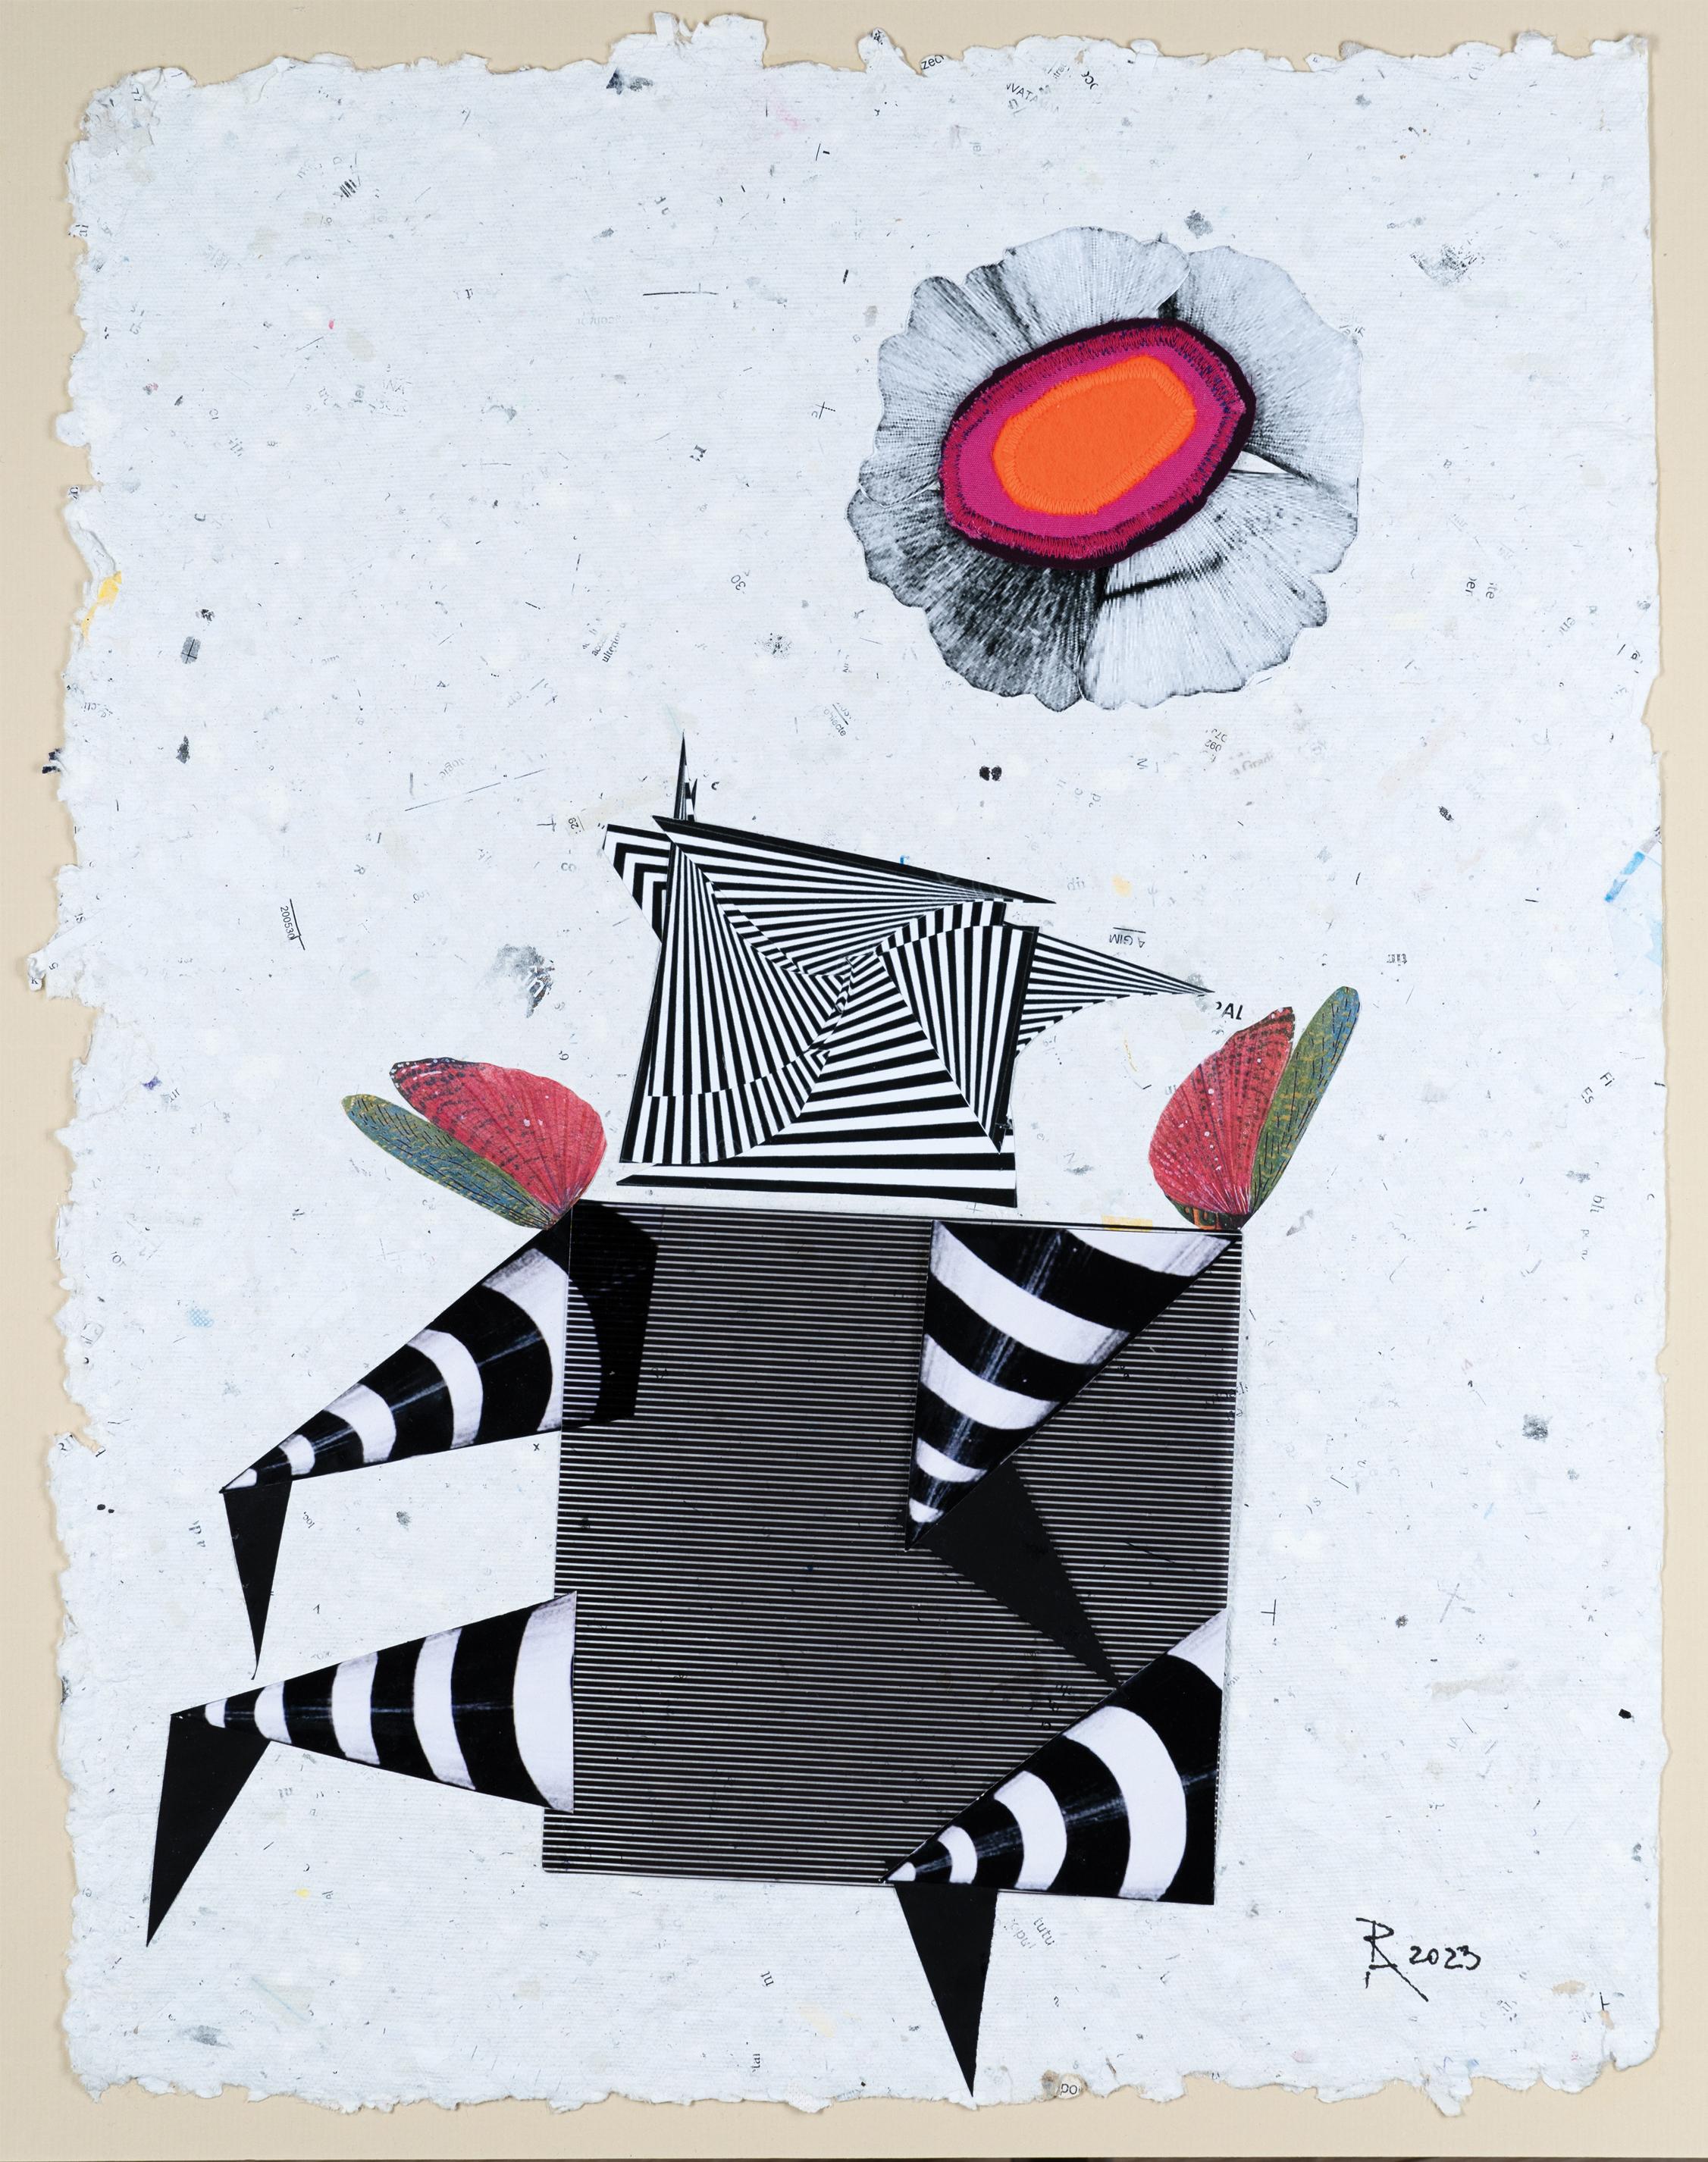 The Flight - Collage, blanc, rouge, noir, art contemporain, surréaliste